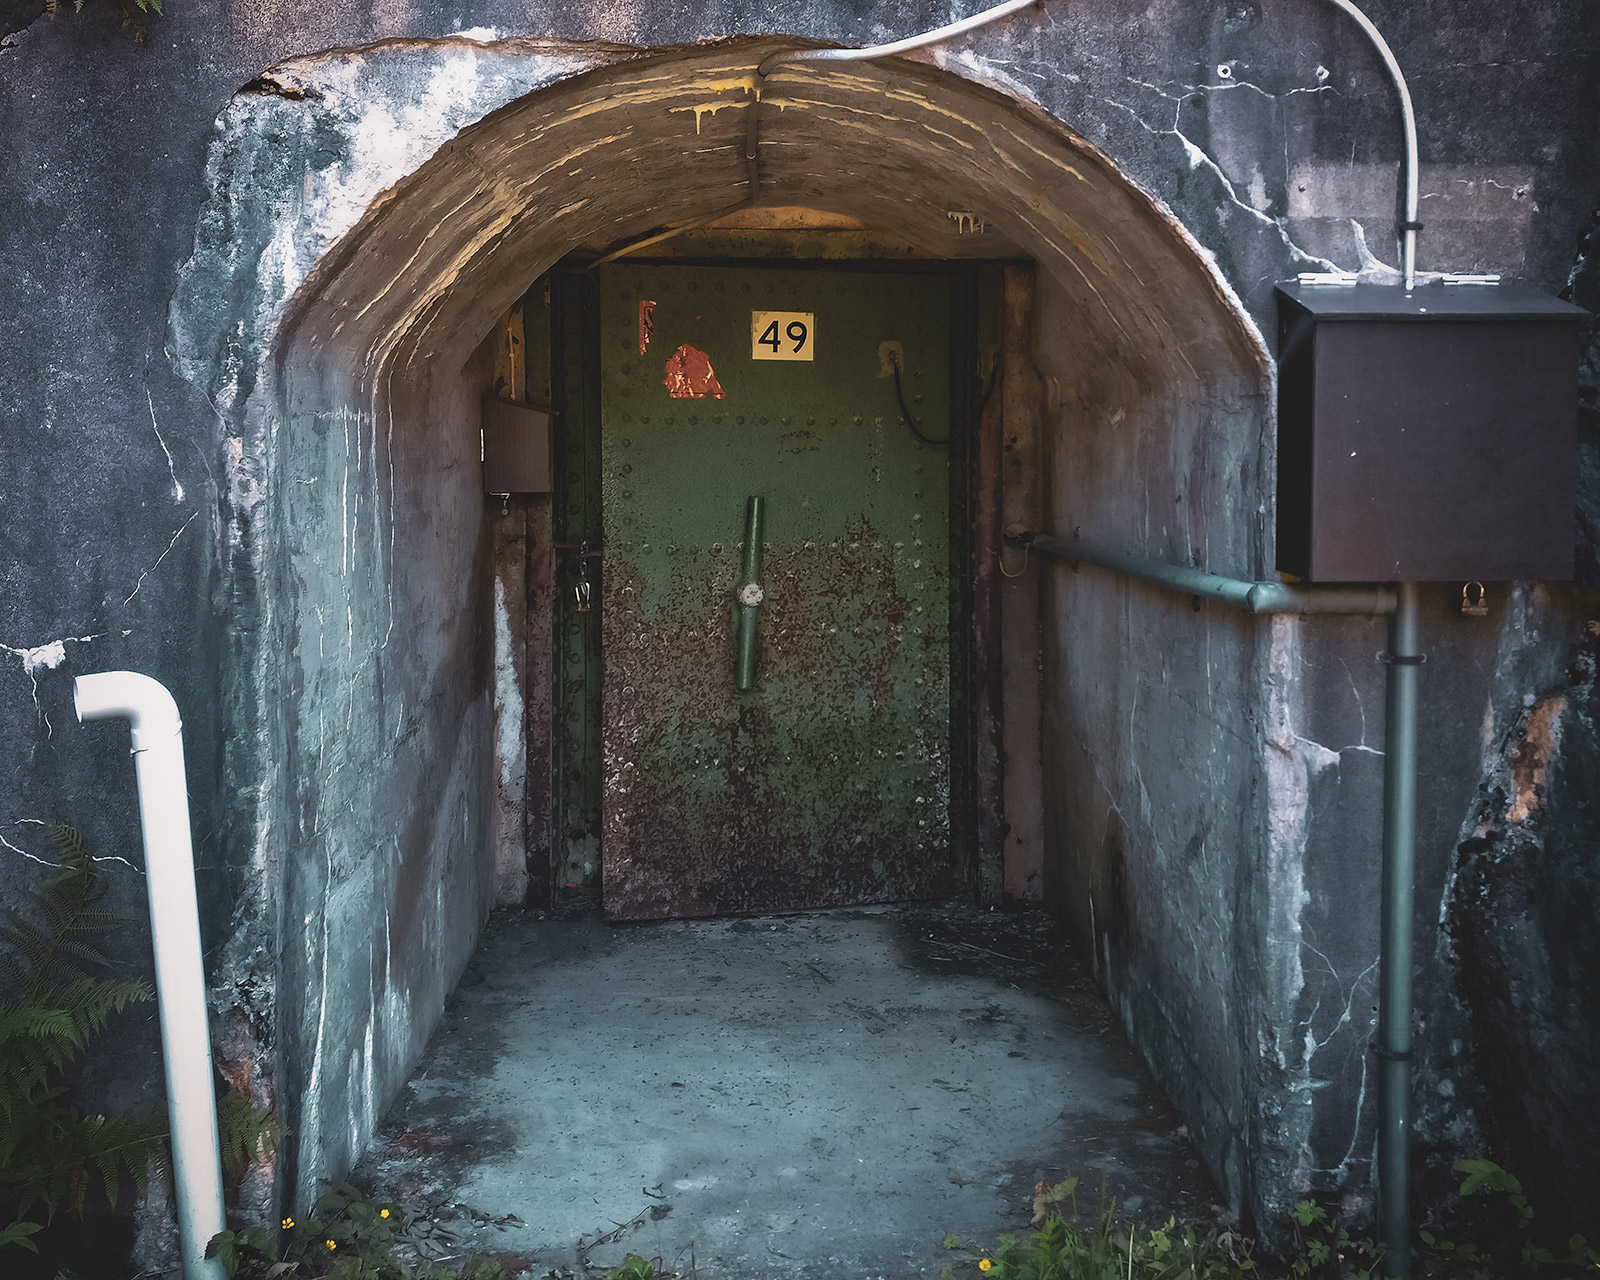 Old Bunker Door at Vallisaari, Finland